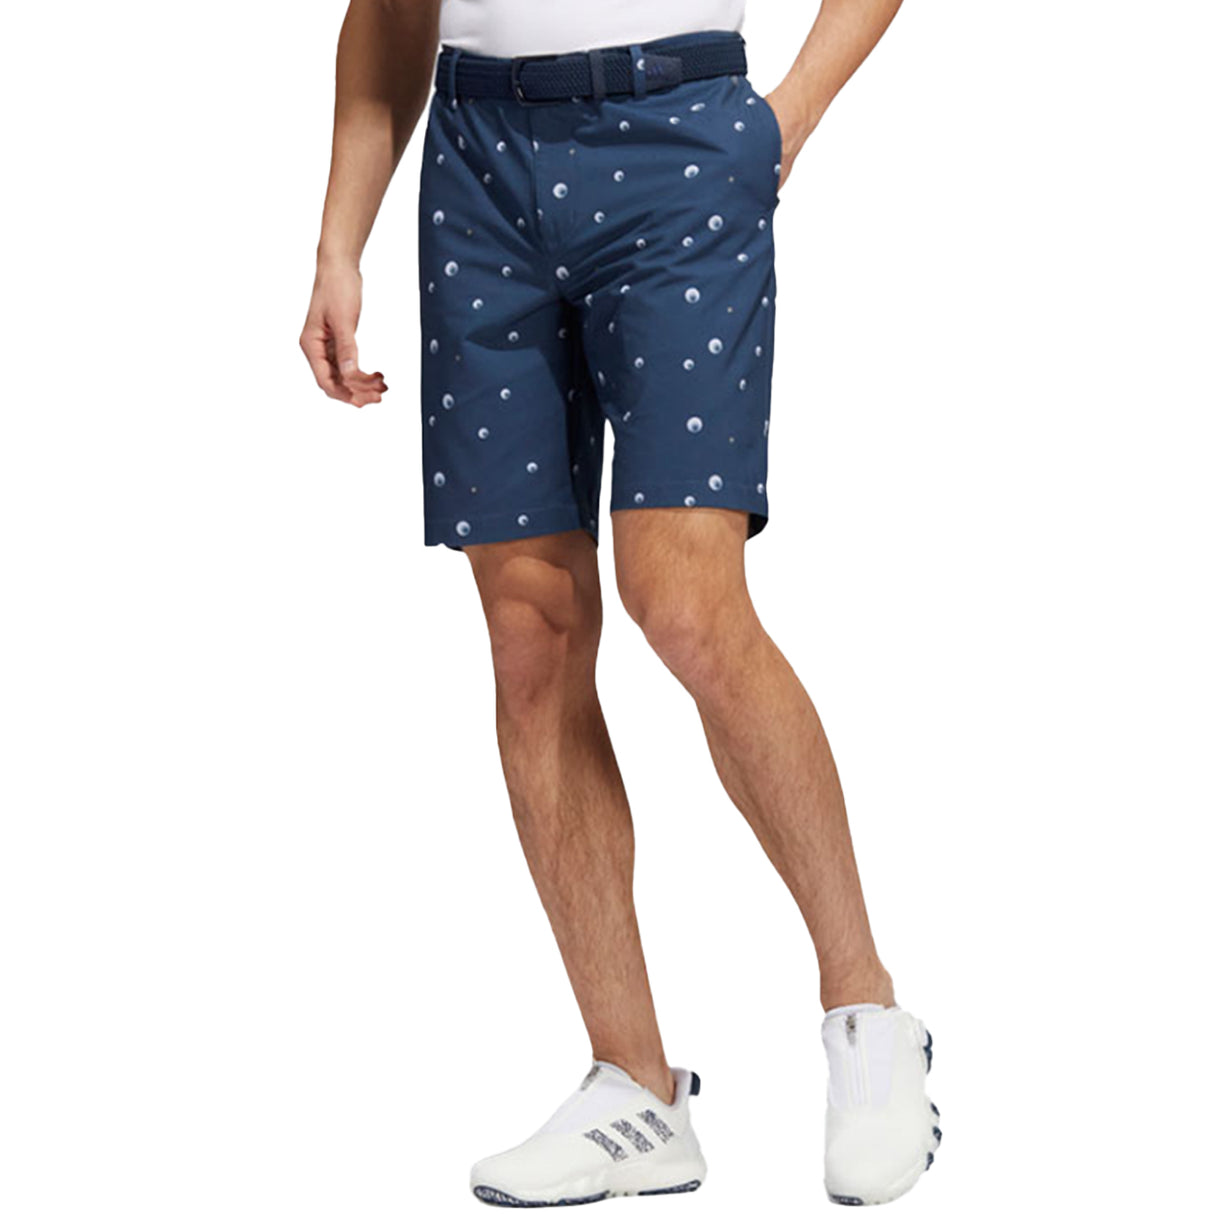 Adidas ULT Print 9 Inch Inseam Golf Shorts